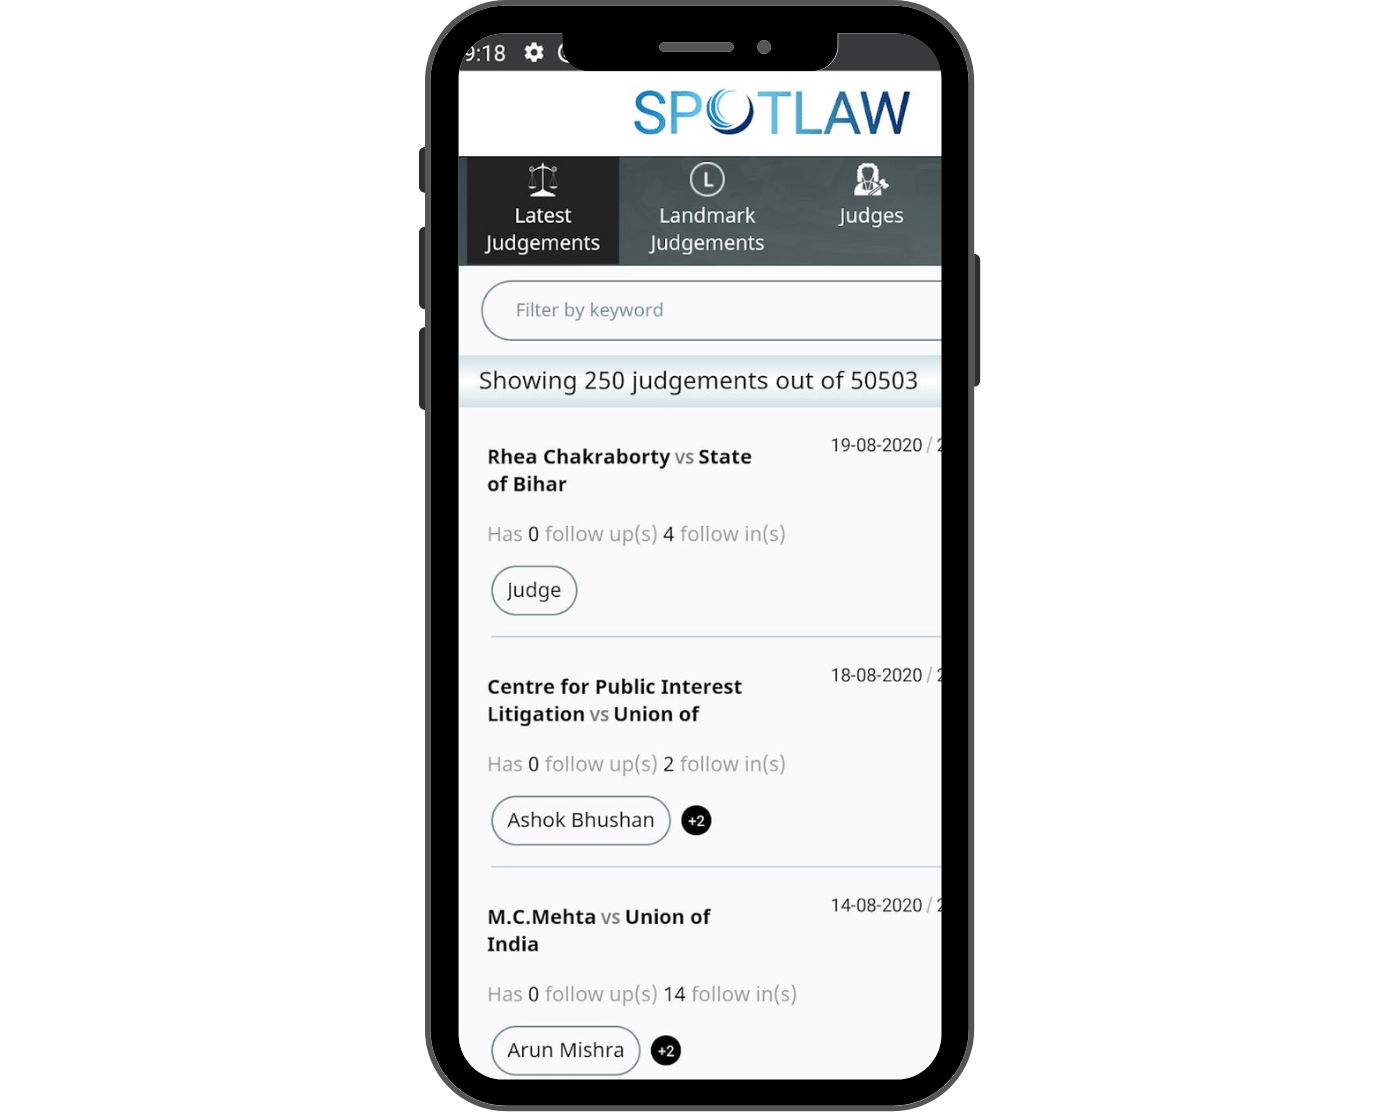 Spotlaw app 2